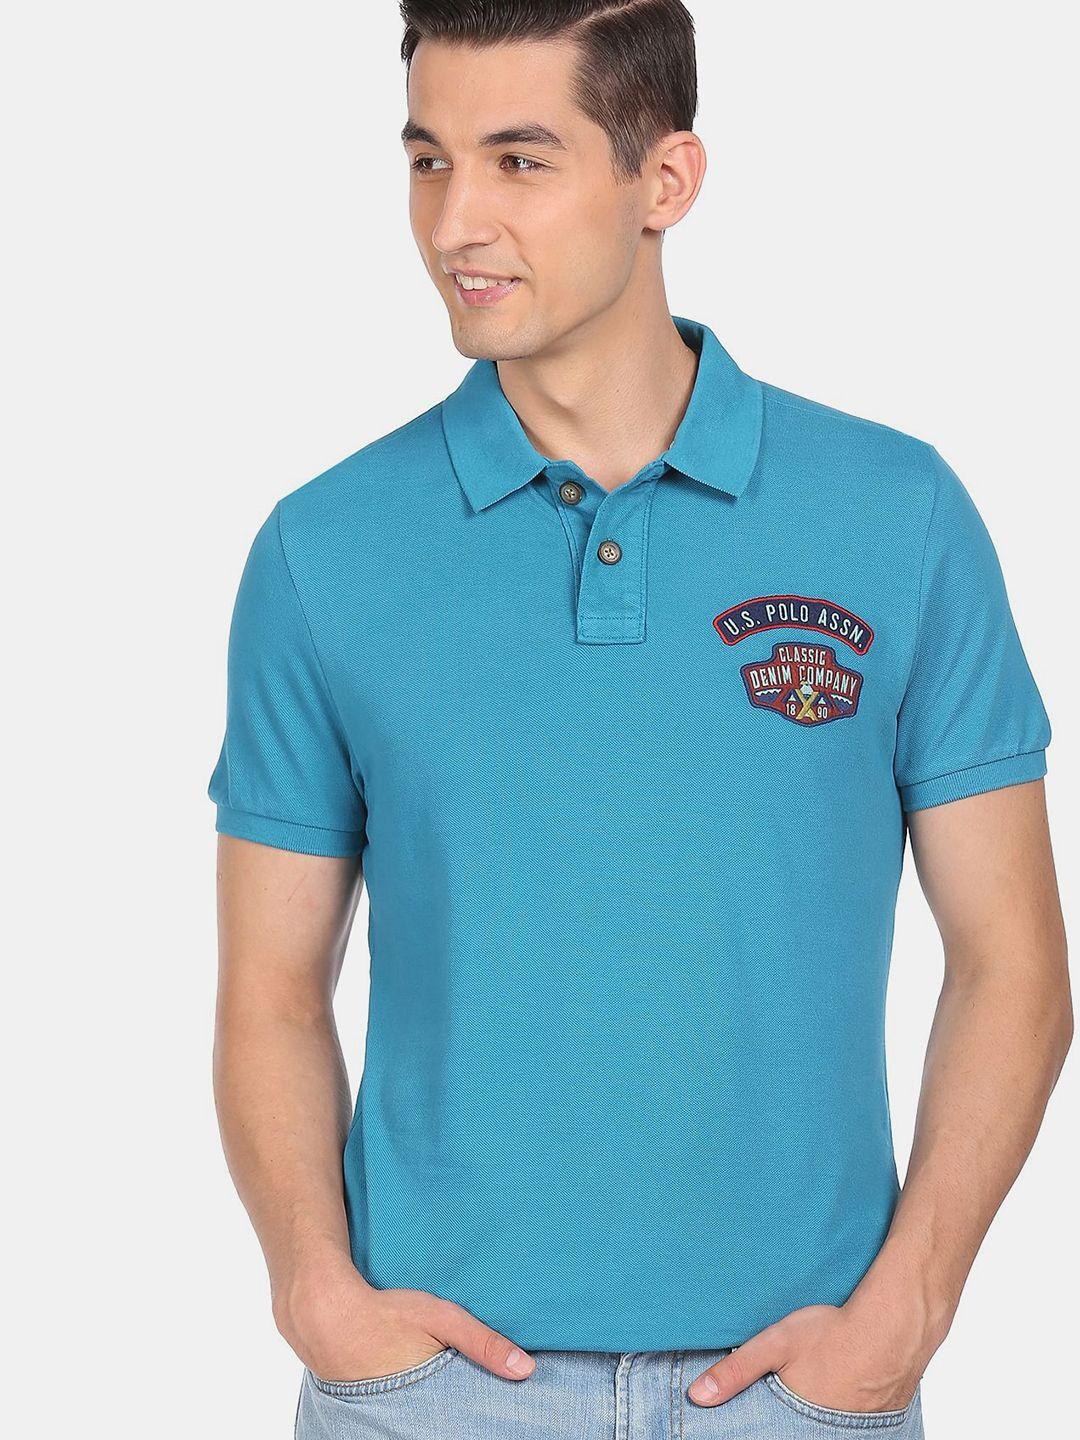 u.s. polo assn. denim co. men blue polo collar pure cotton applique t-shirt